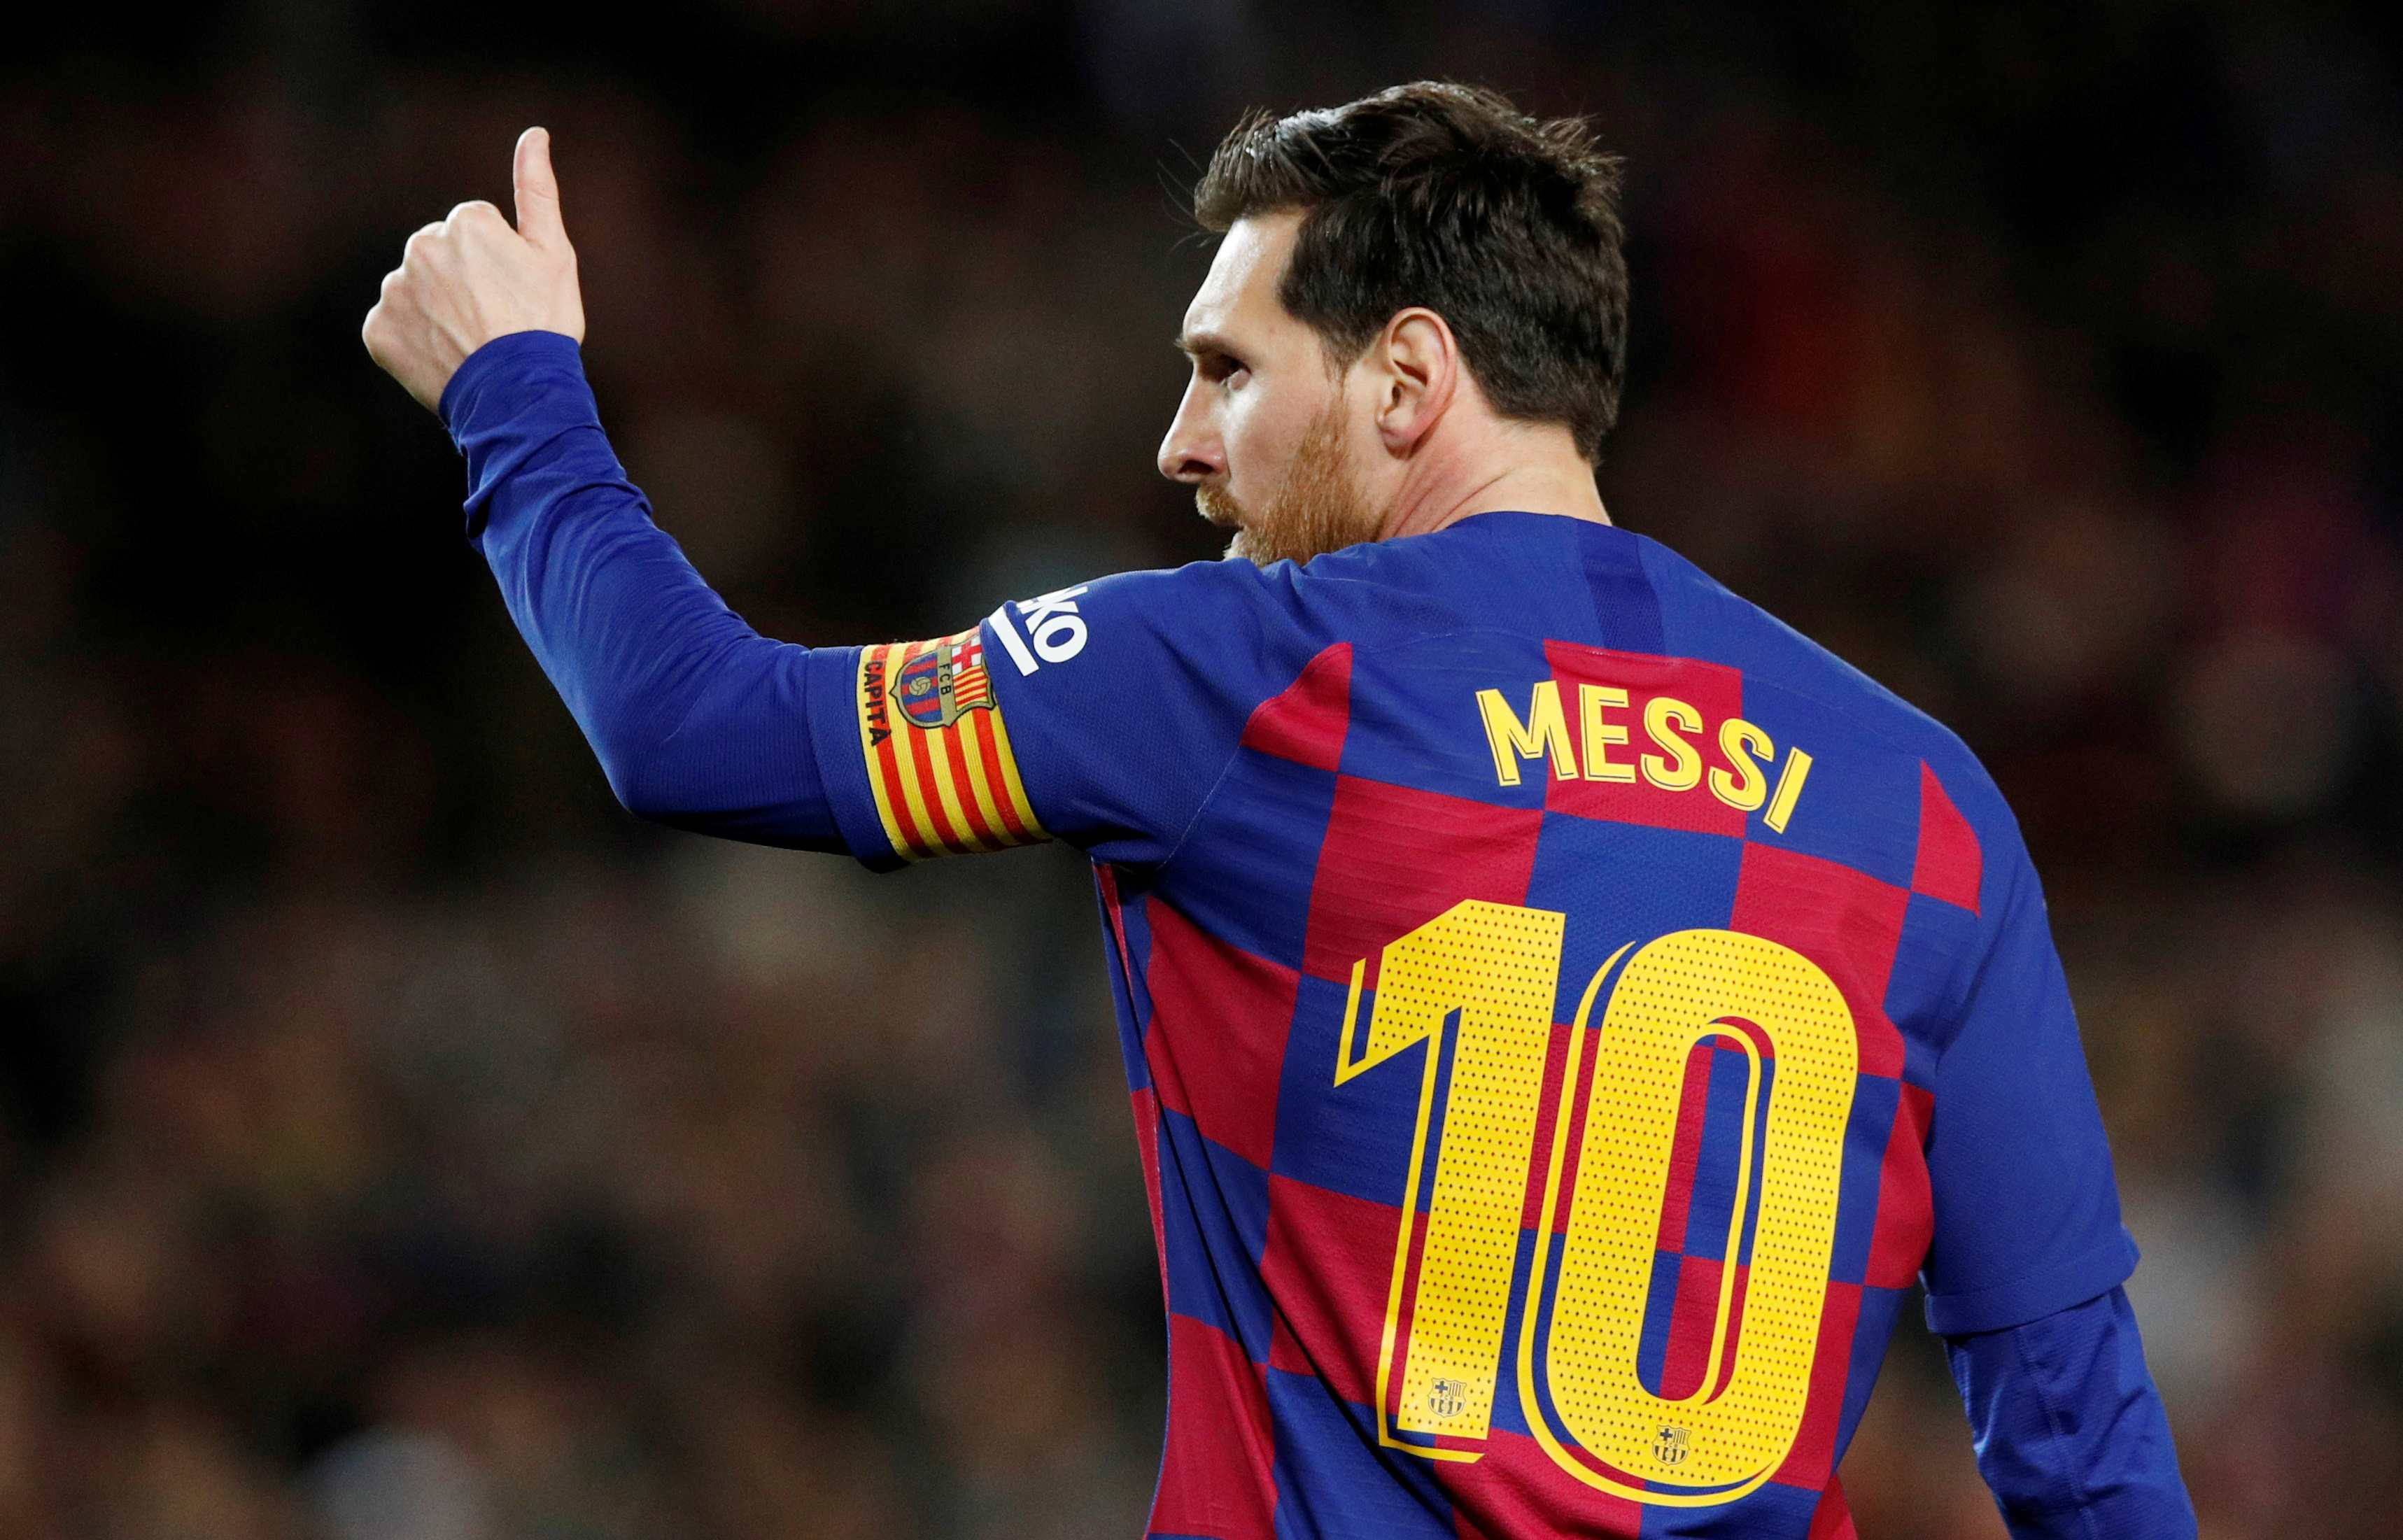 Xem ảnh chân dung của Lionel Messi, huyền thoại bóng đá người Argentina. Tận hưởng những khoảnh khắc tuyệt vời của cầu thủ vĩ đại này trong các trận đấu và chứng kiến ​​sự nghiệp huyền thoại của anh ta trong suốt các năm qua.